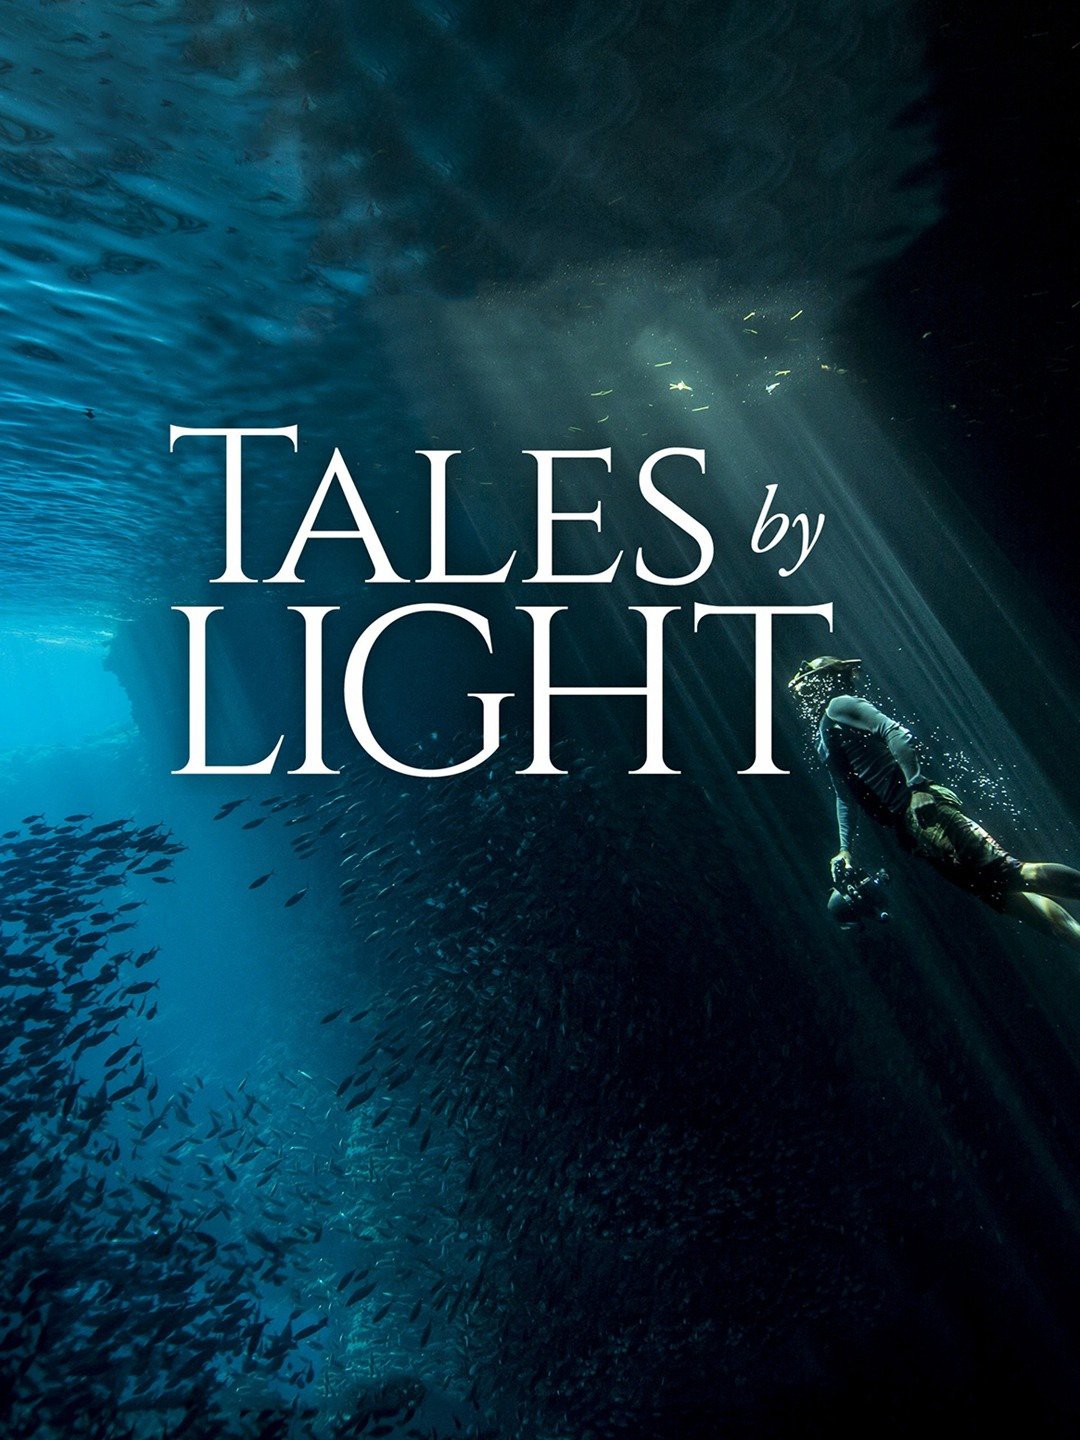 Câu chuyện kể bằng ánh sáng | Tales by Light (2015)